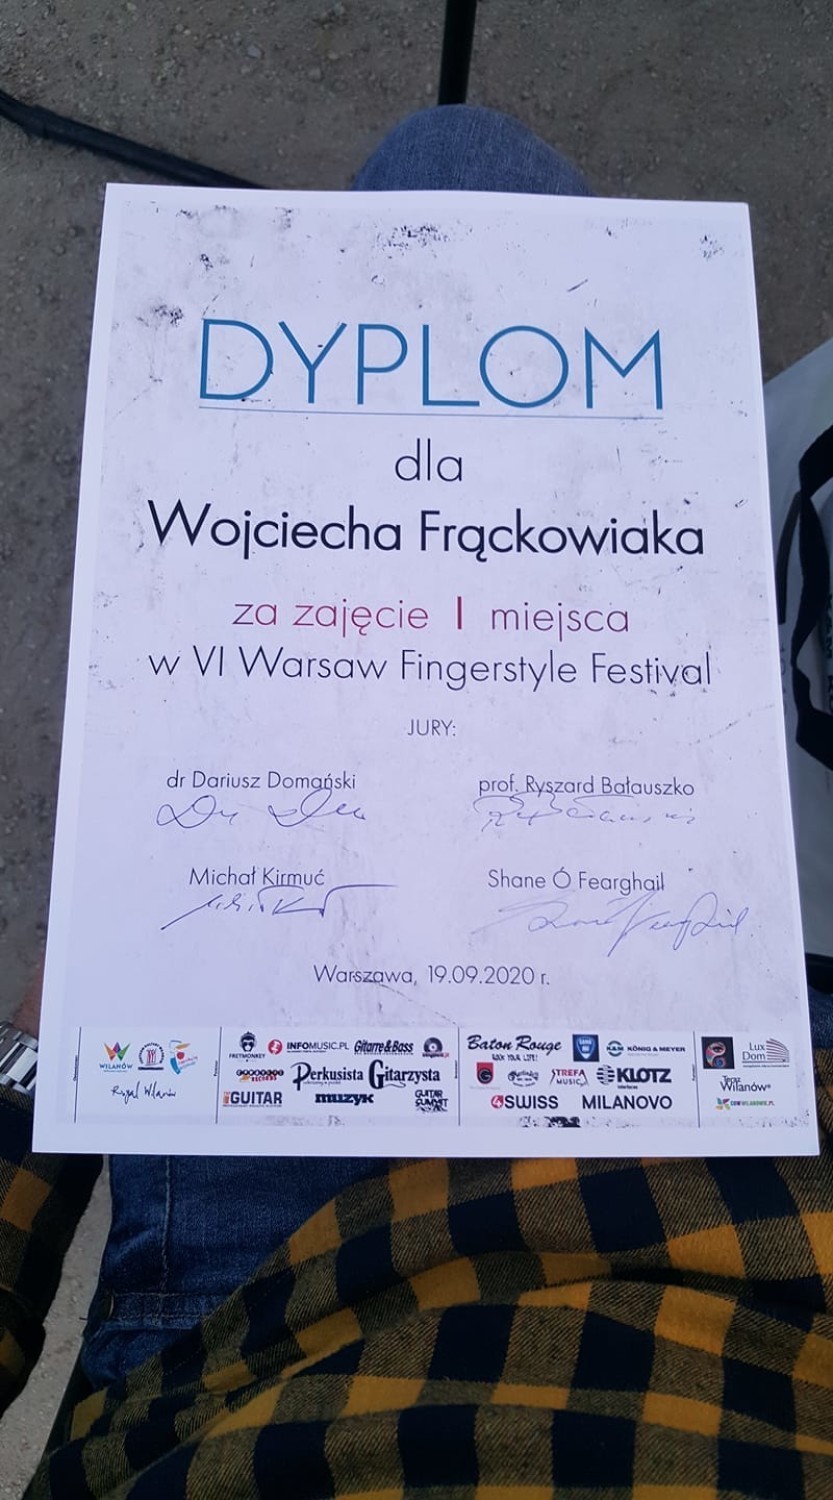 Leszno. Wojciech Frąckowiak wygrał międzynarodowy gitarowy konkurs - Warsaw Fingerstyle Festival 2020 [ZDJĘCIA] 